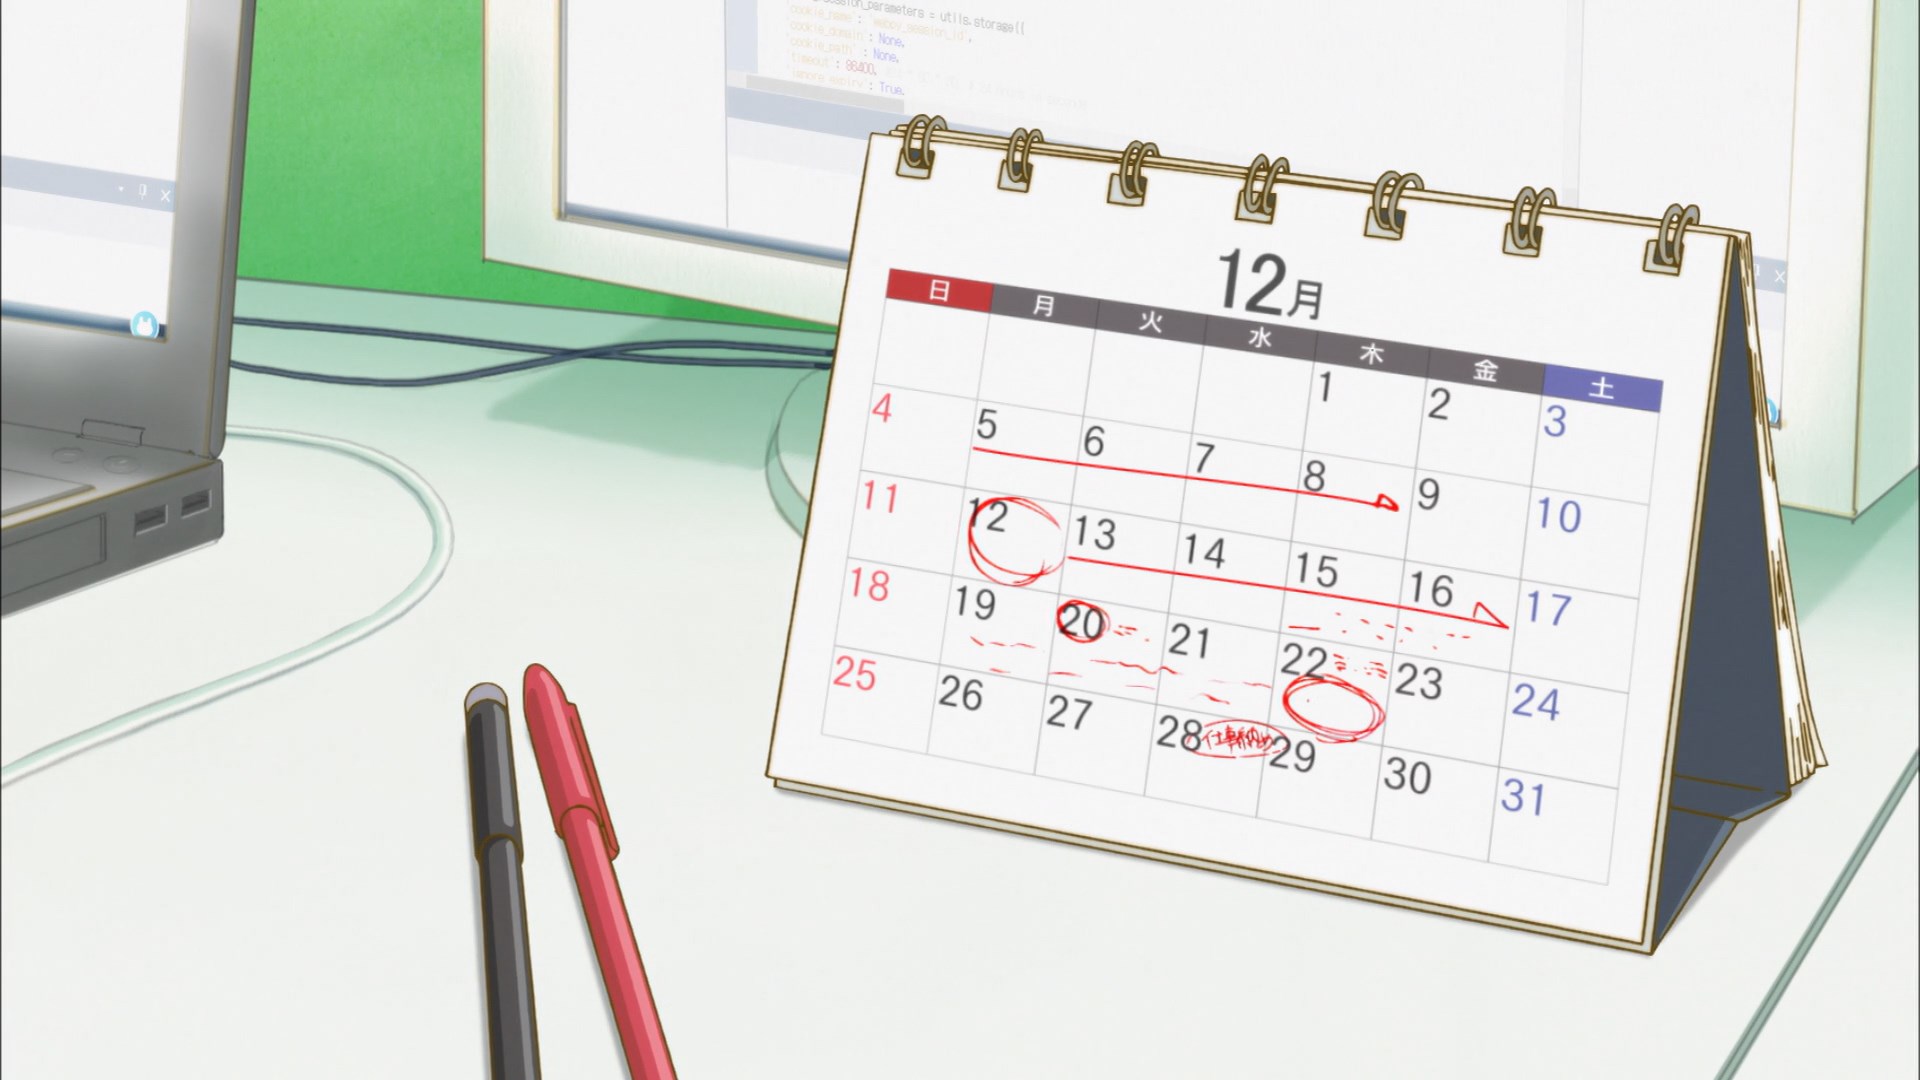 Naruto and Shippuden Anime Calendar 2022 – All About Anime and Manga